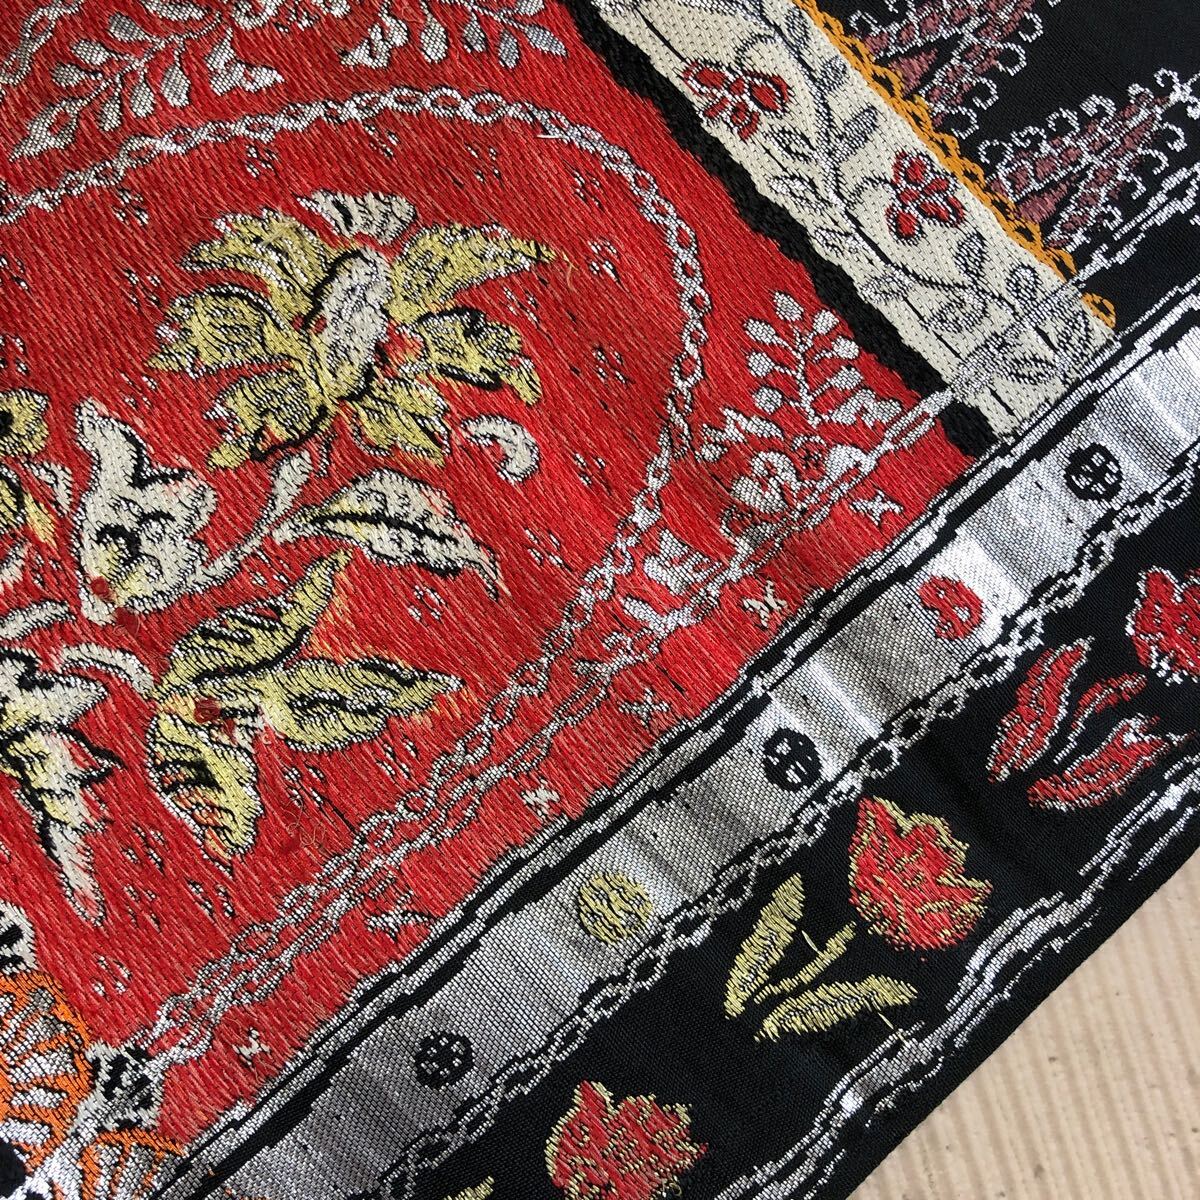  античный Nagoya obi кимоно чёрный цветок Showa Retro Taisho роман современный мир ...ko-te переделка шелк натуральный шелк 100%.17-25t